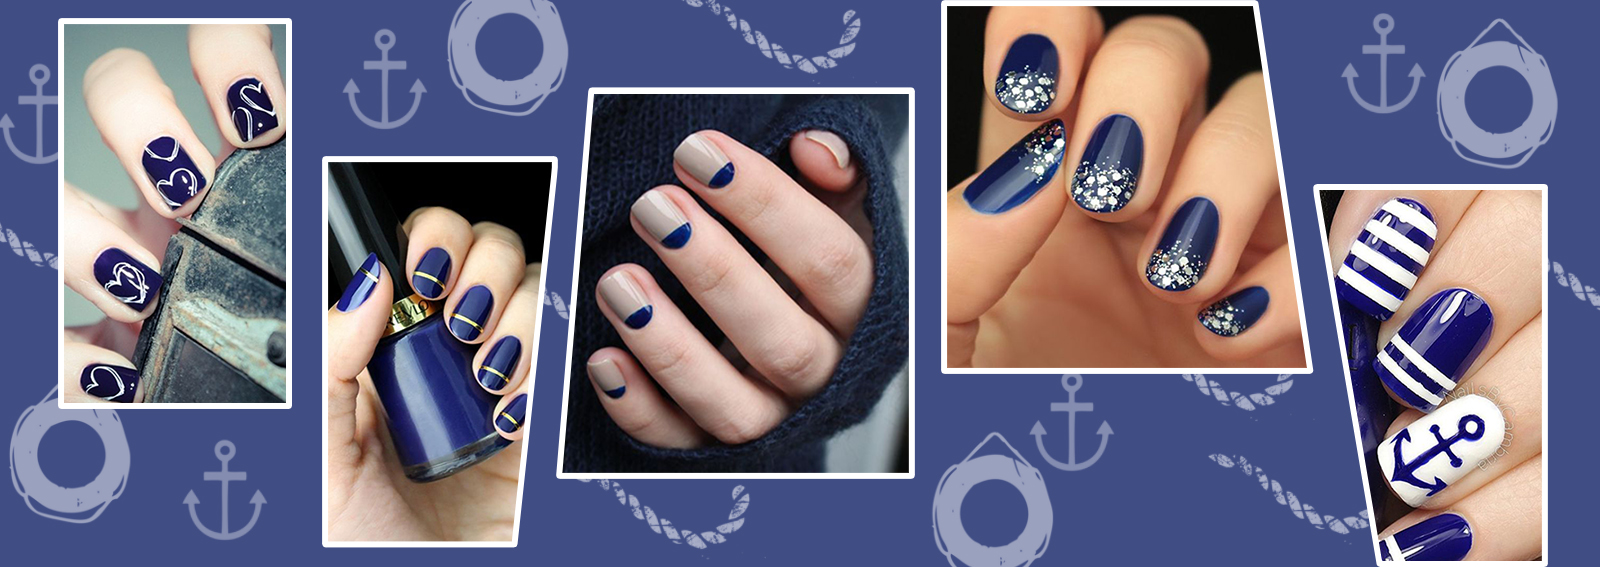 Nail art blu: le unghie navy per la primavera